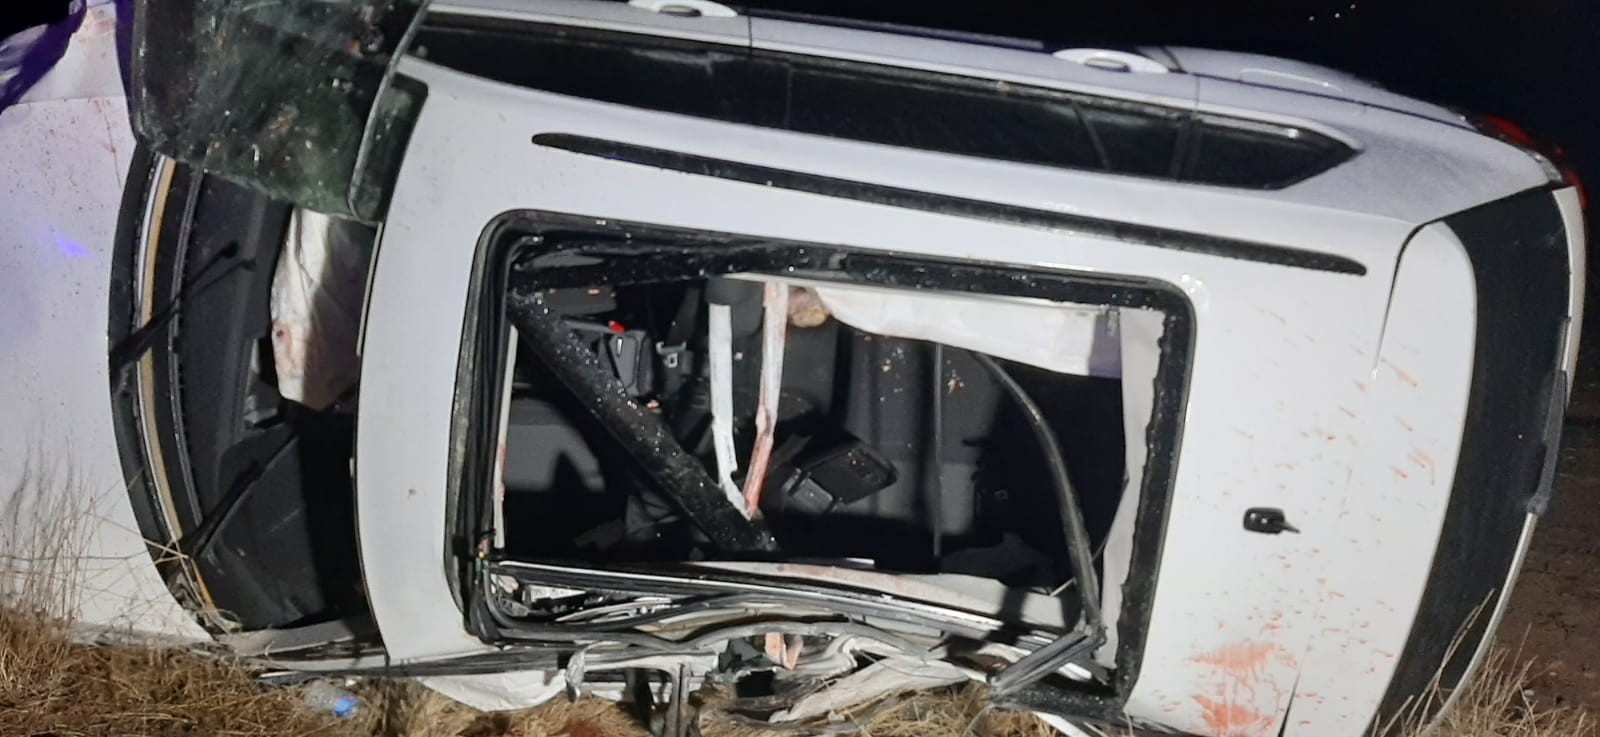 Erzincan'da otomobil şarampole devrildi: 3 ölü, 2 yaralı